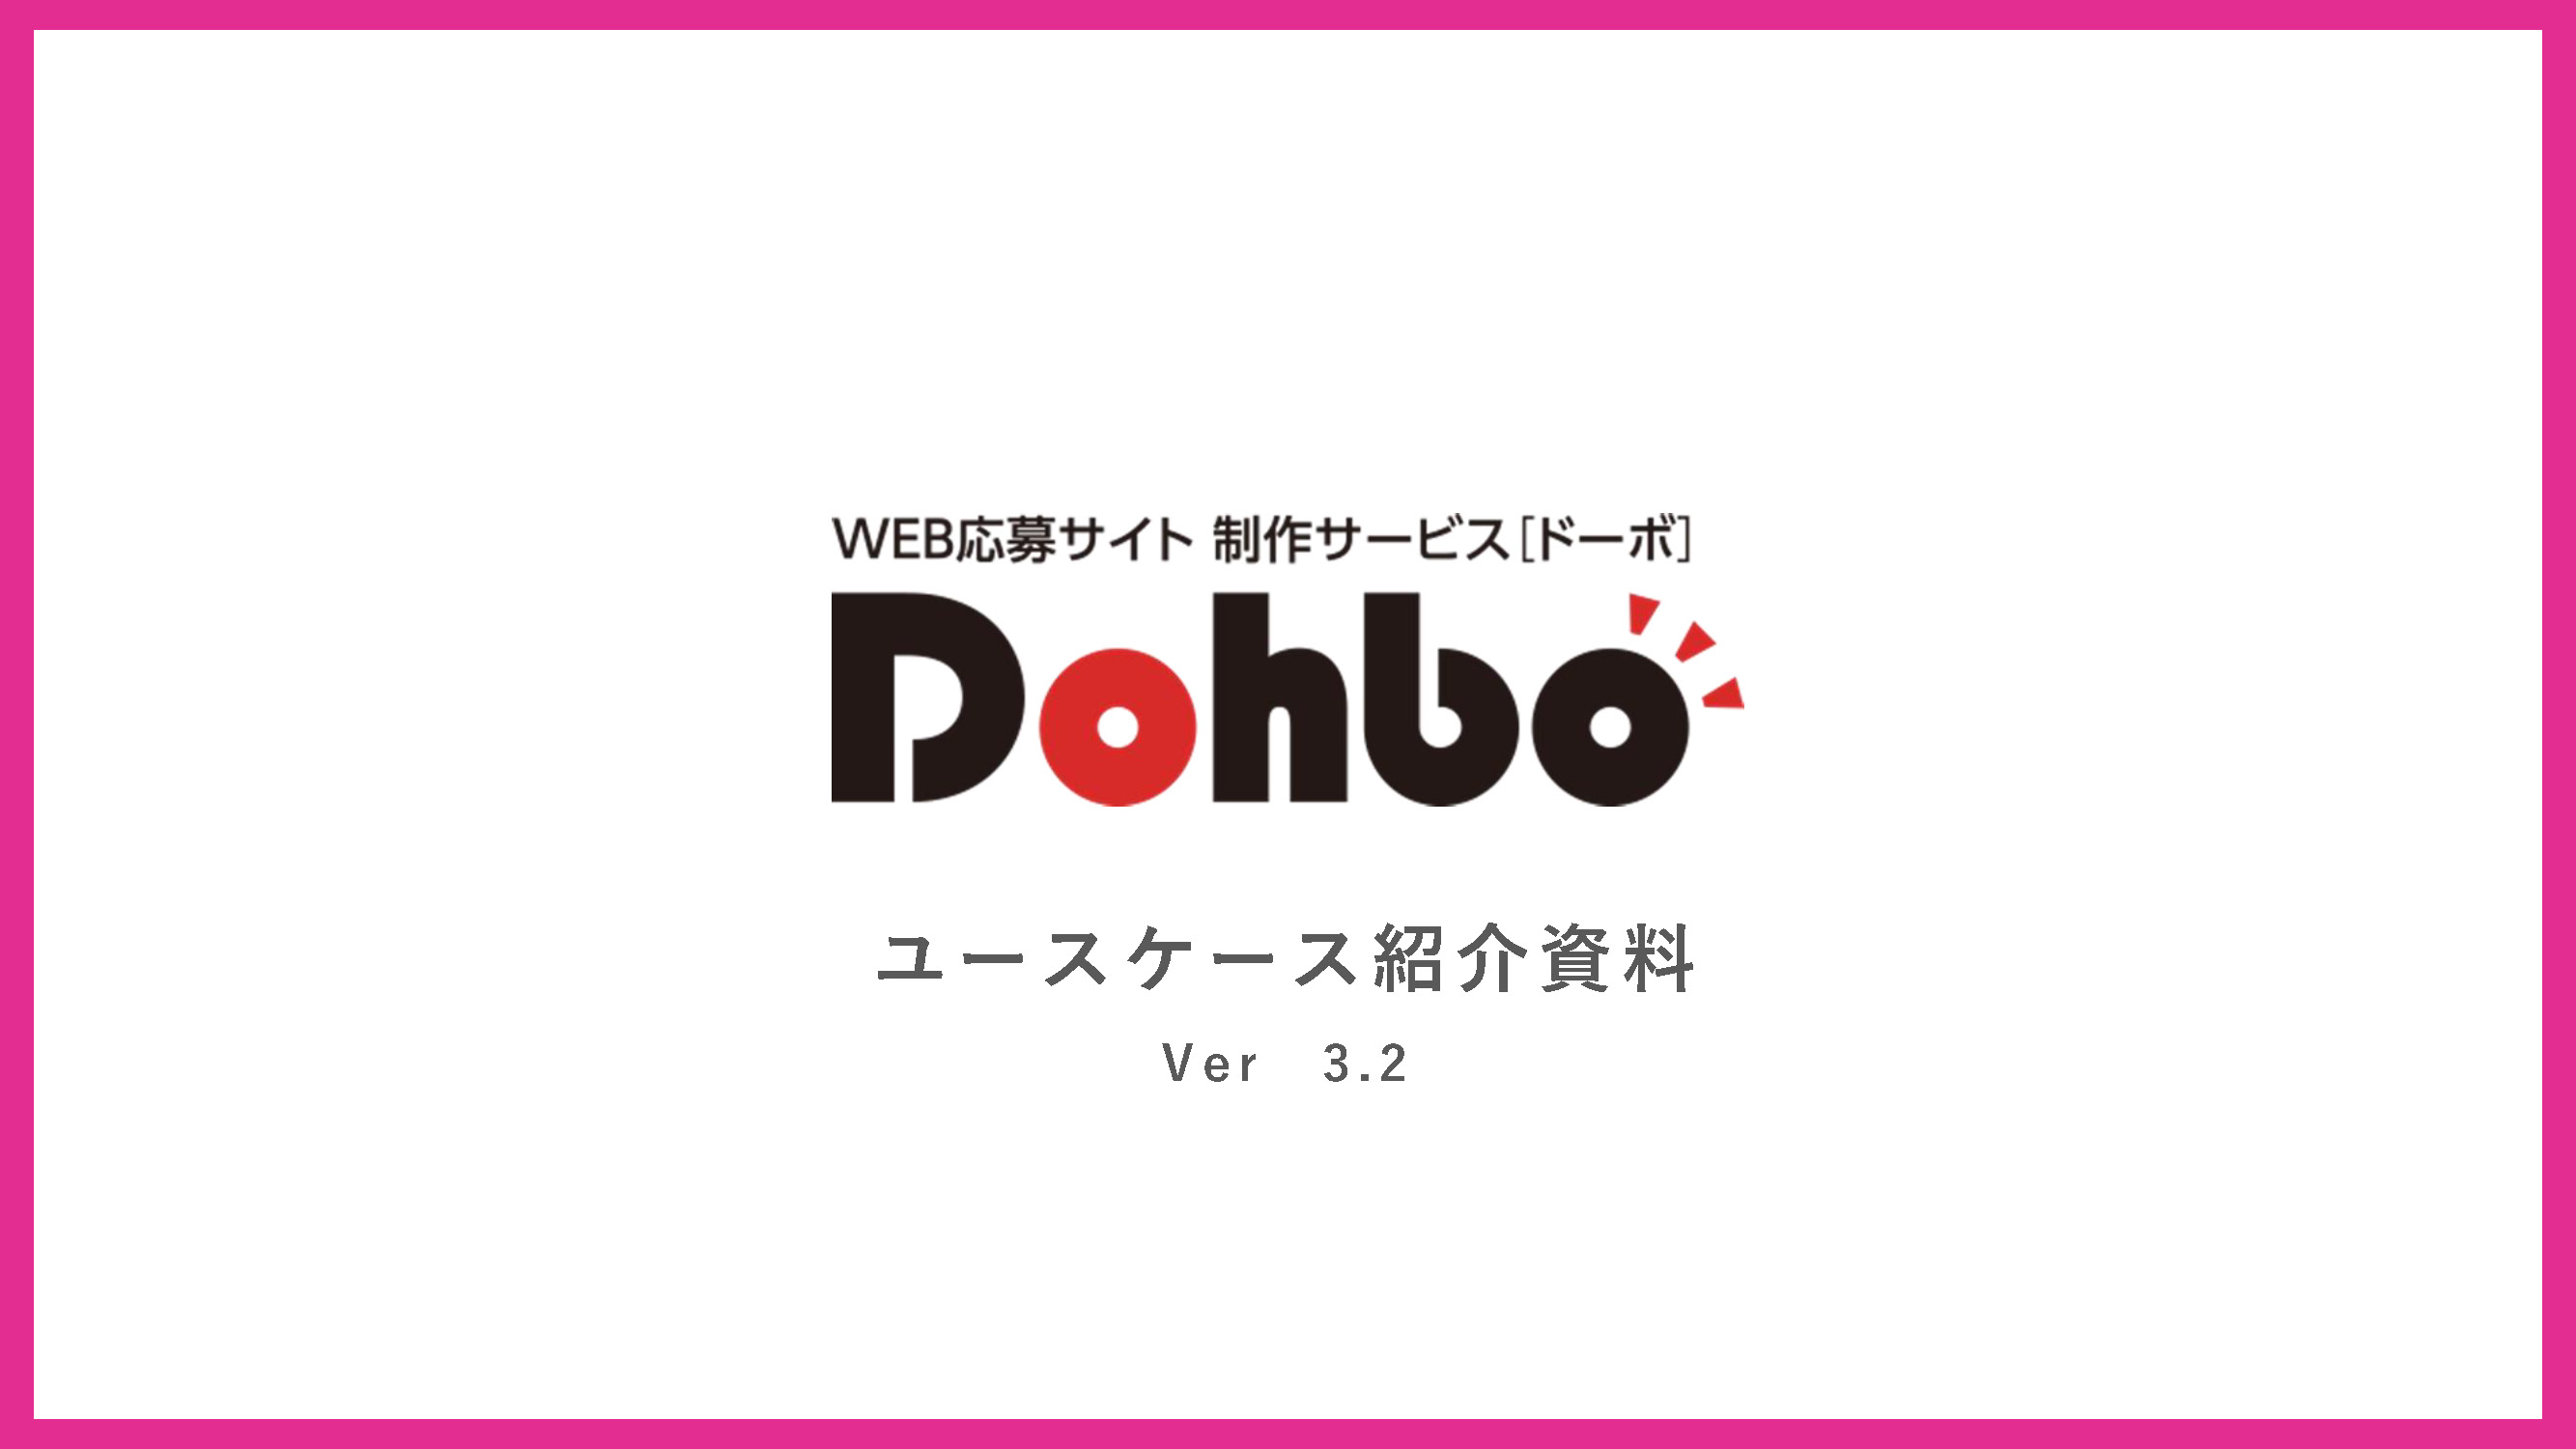 Dohboユースケース紹介資料 資料請求